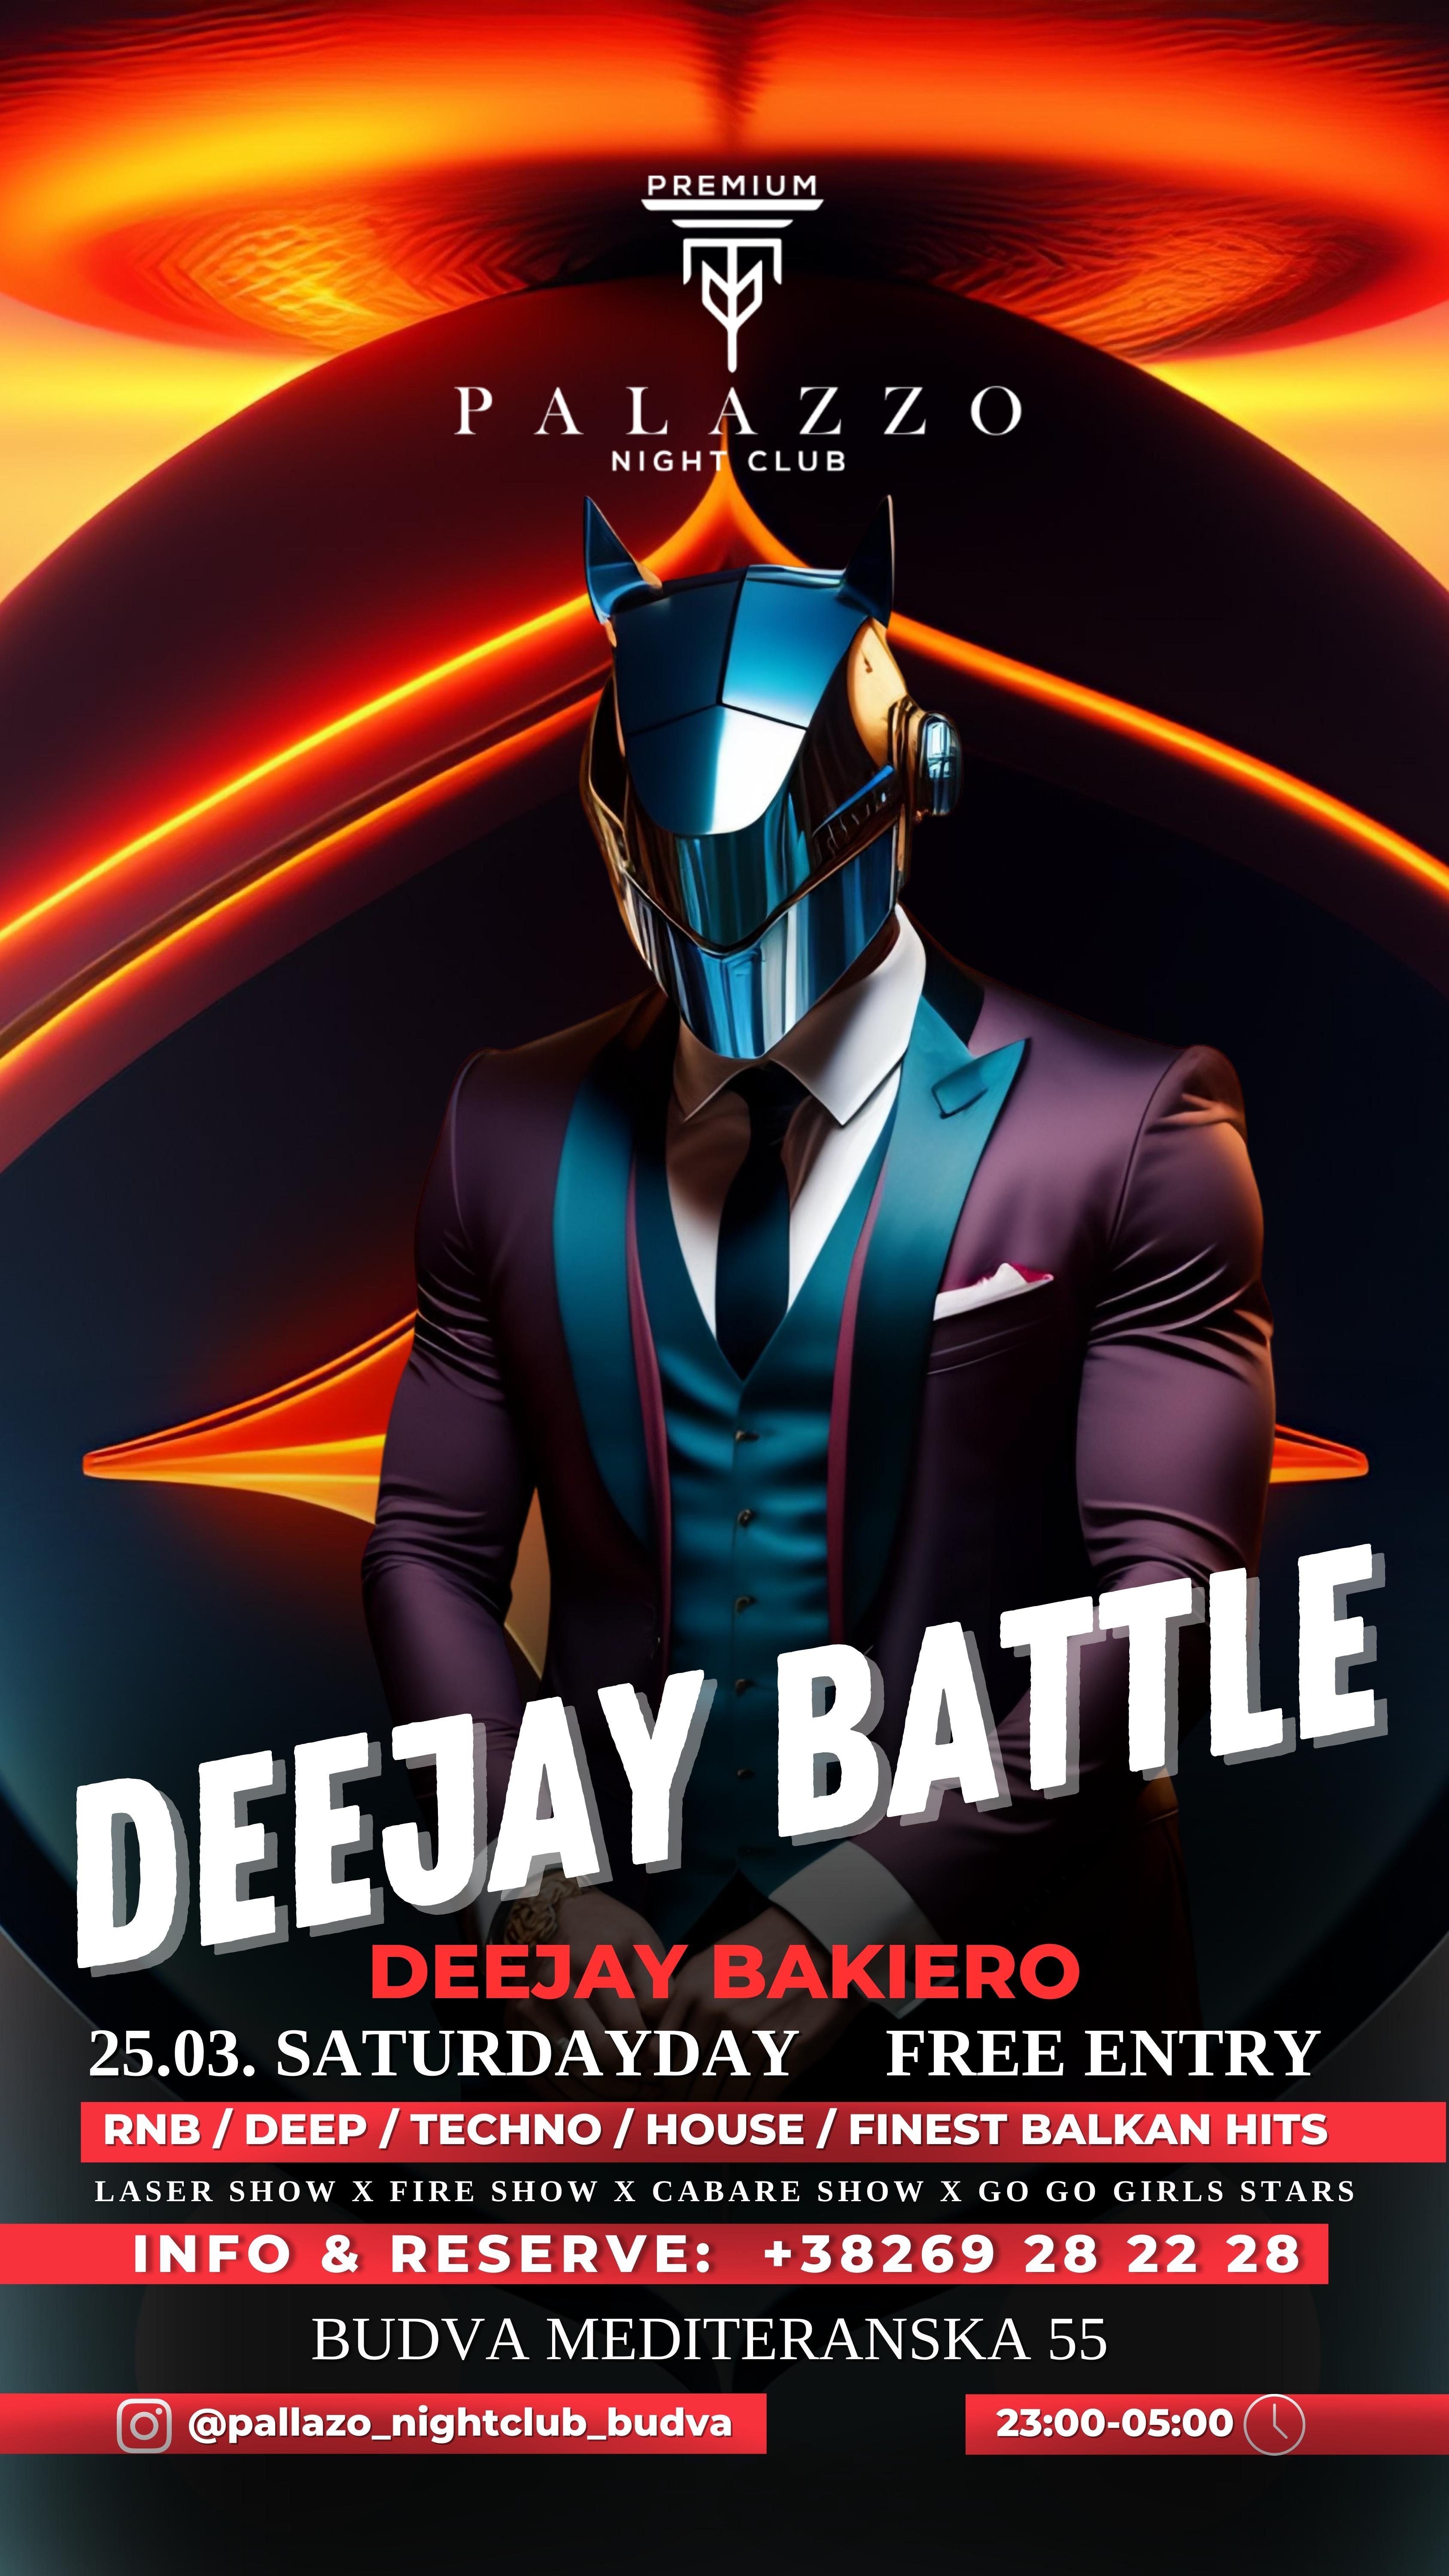 DeeJay Bakiero